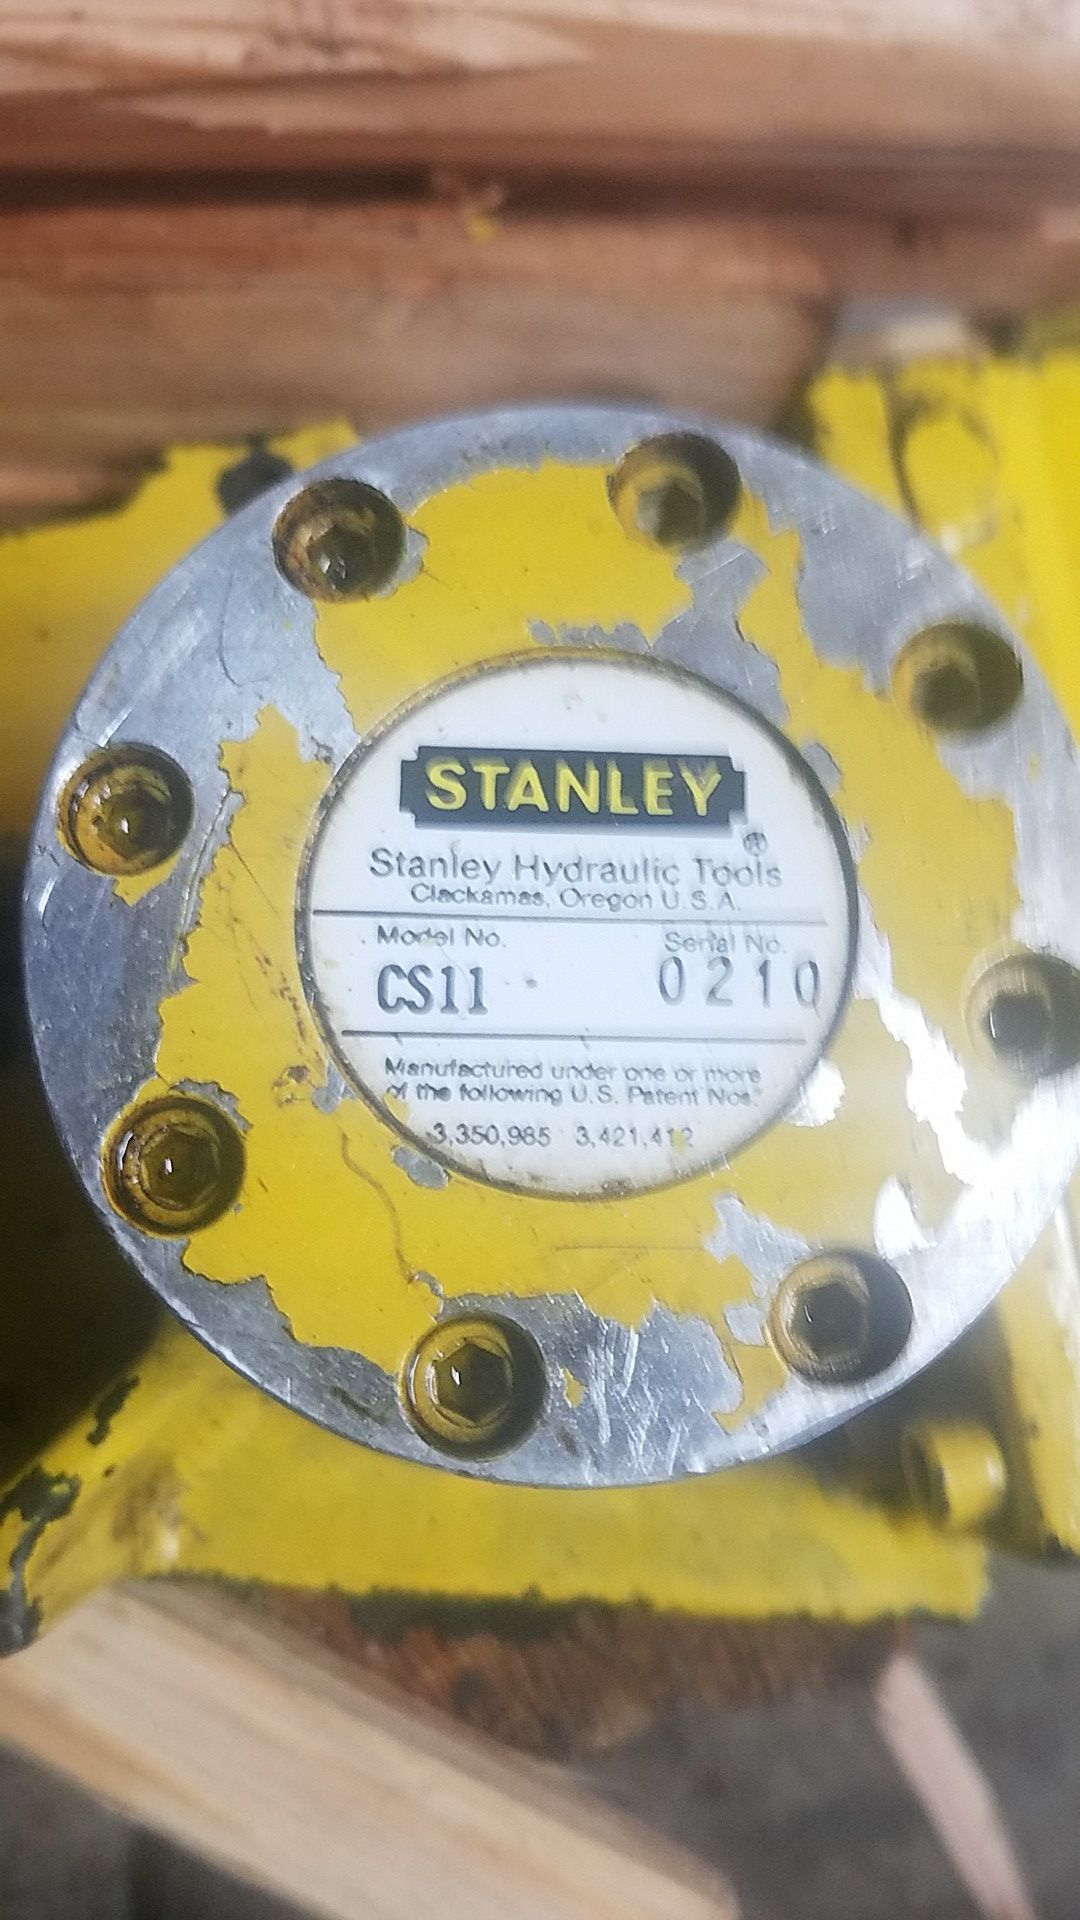 Stanley CS11 underwater chainsaw